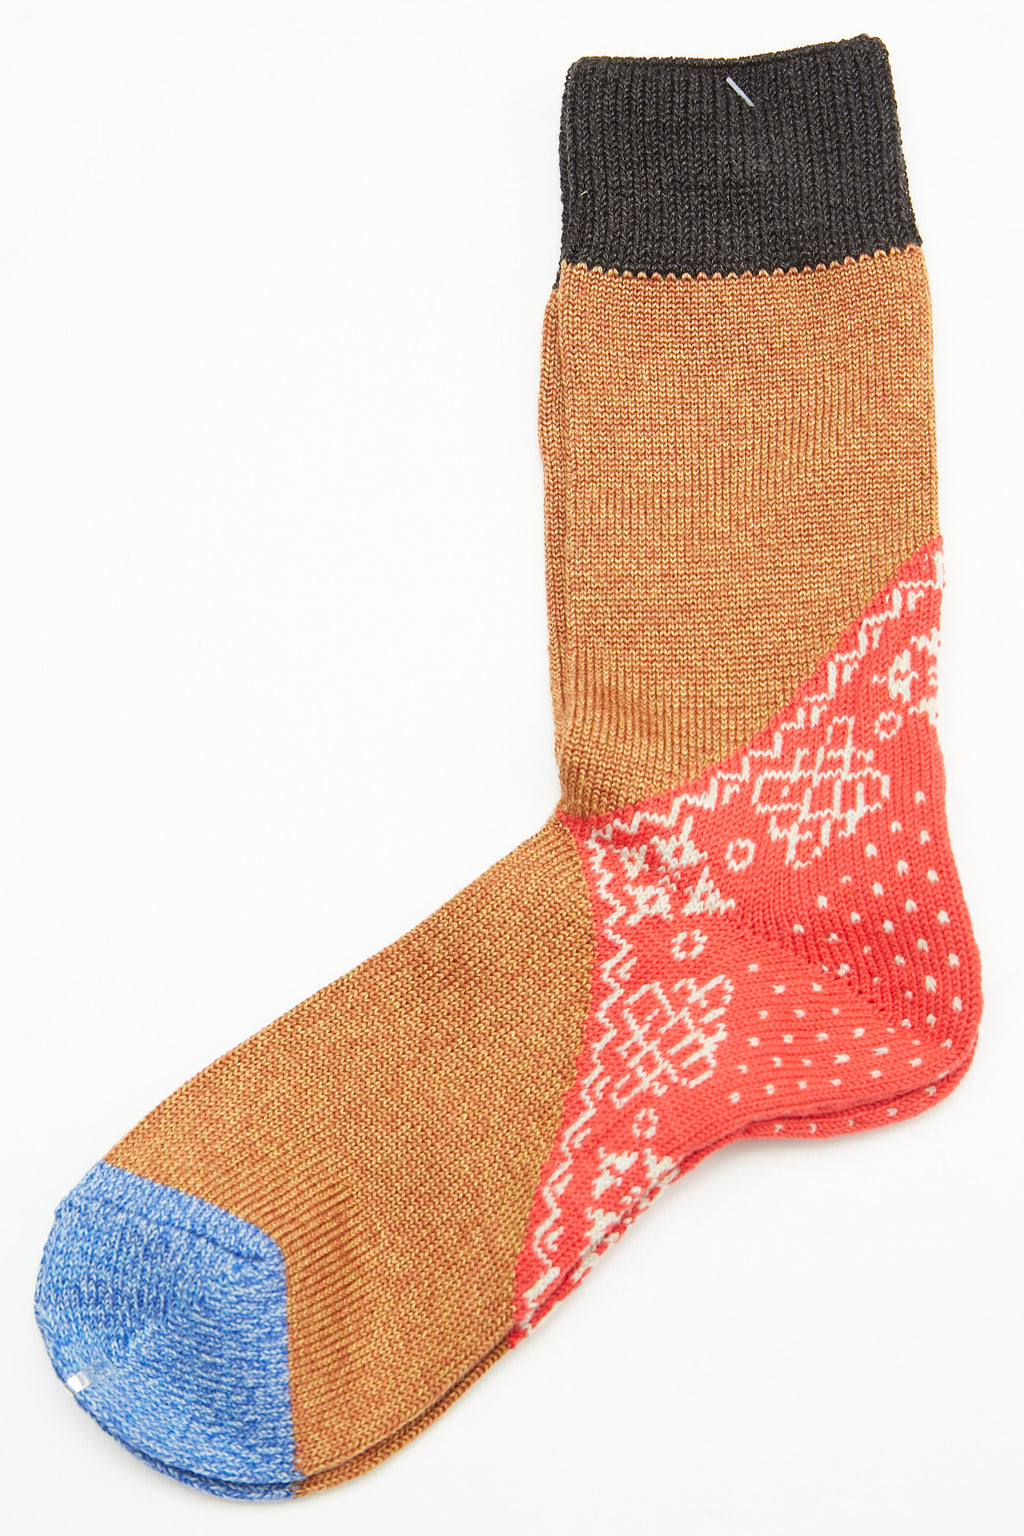 Kapital 96 Yarns Wool Heel Bandana Socks - Red